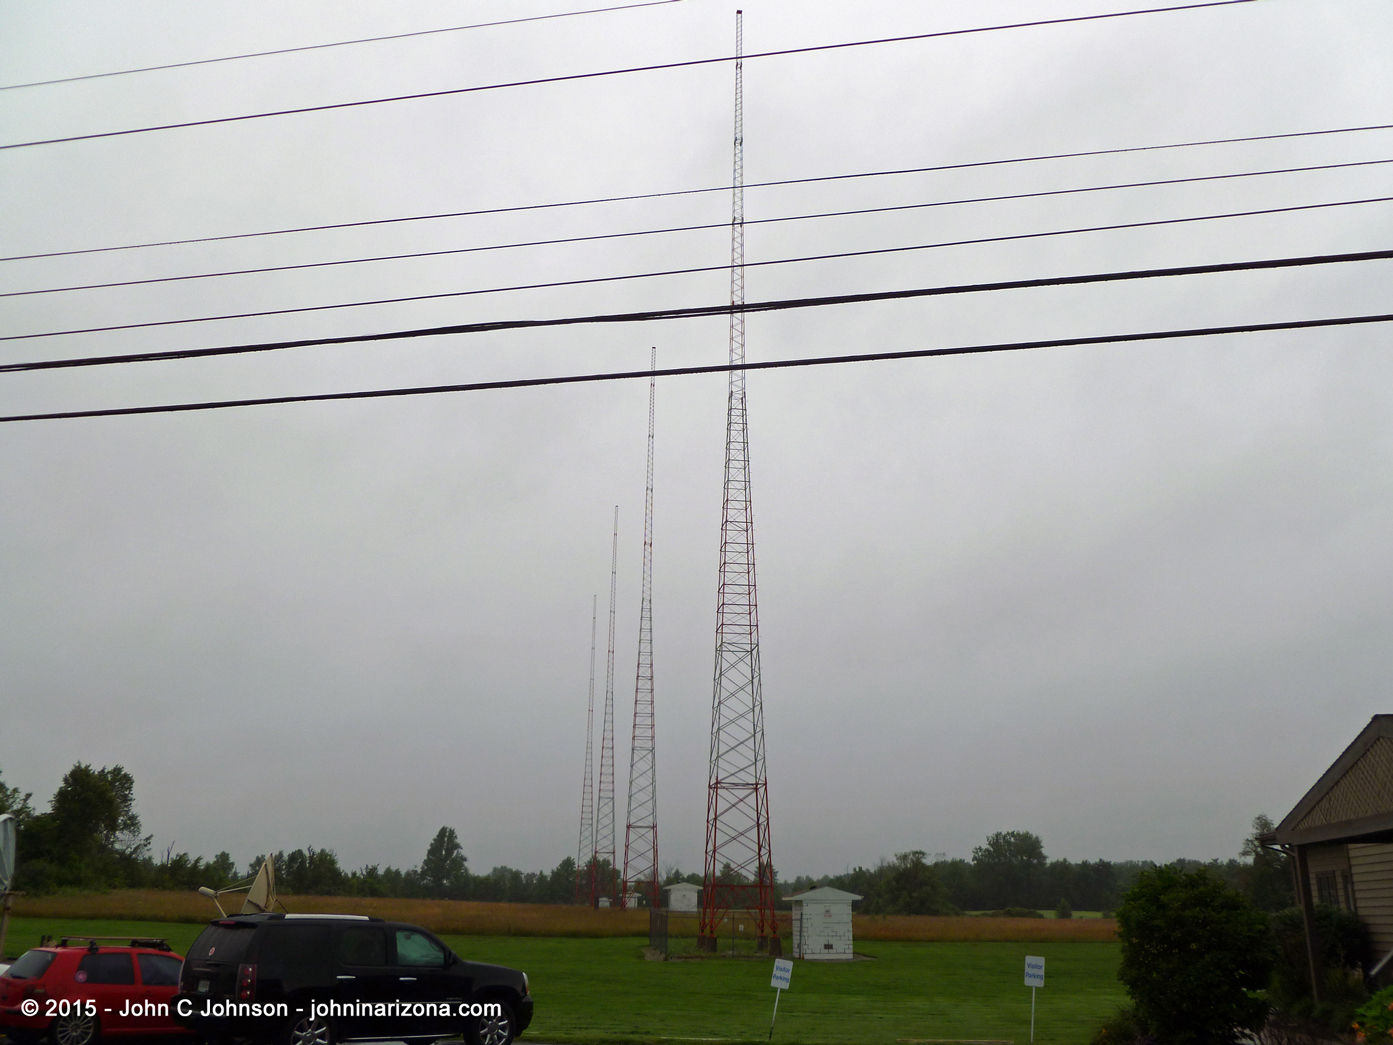 WKJG Radio 1380 Fort Wayne, Indiana